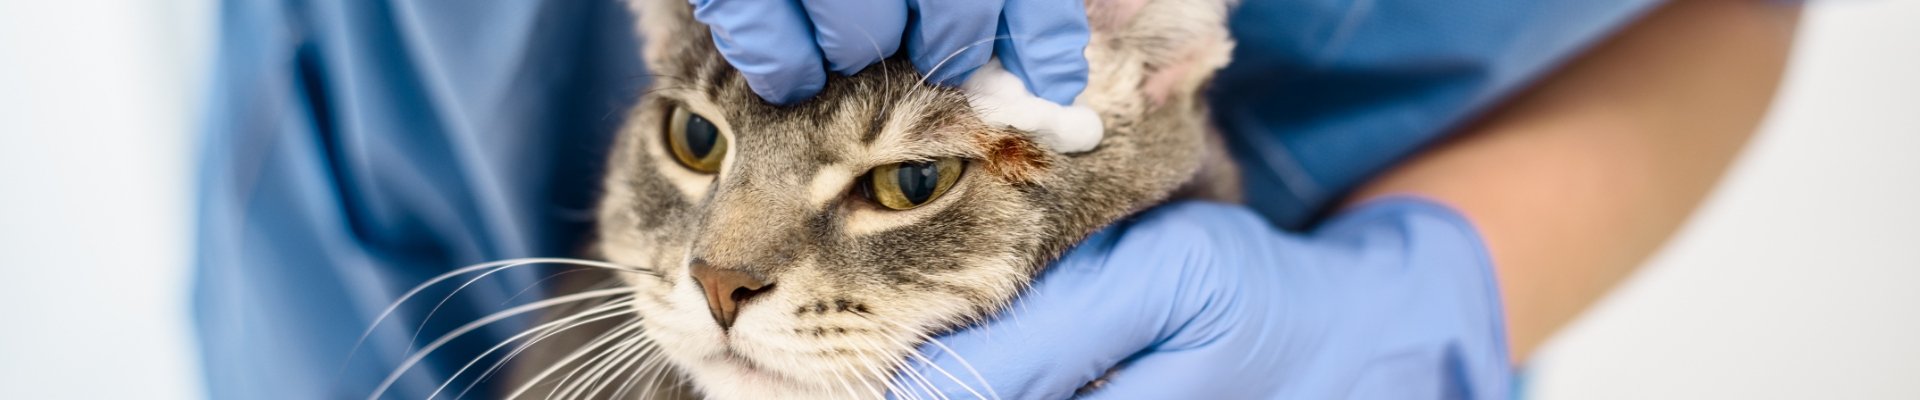 Un veterinario limpiando las orejas de un gato atigrado